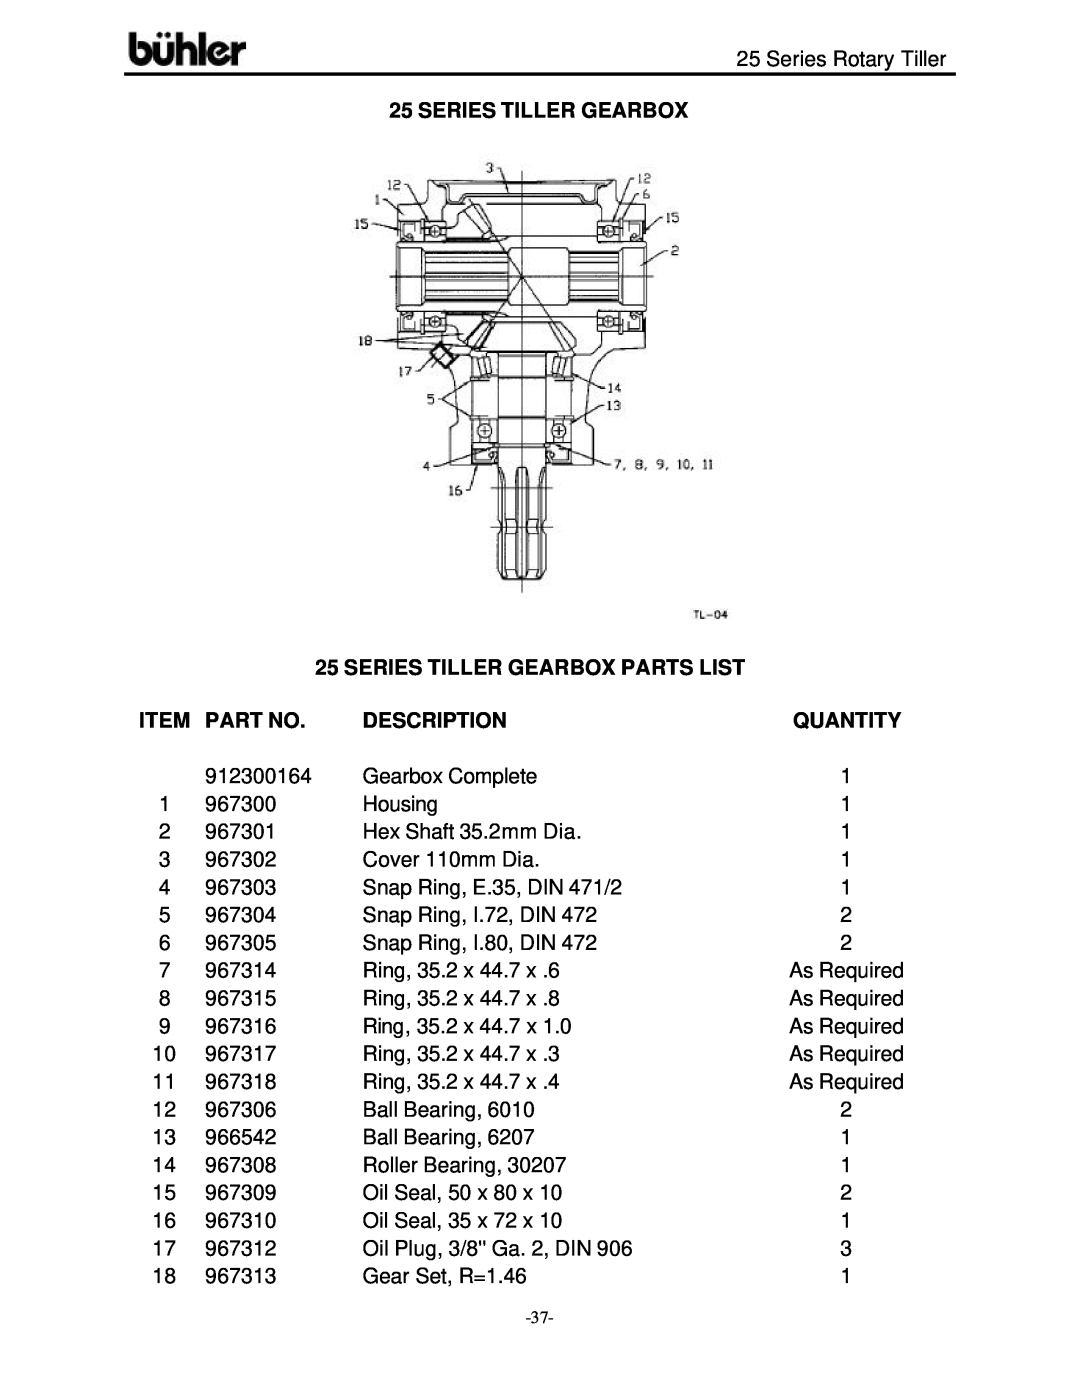 Buhler FK303 warranty Series Tiller Gearbox Parts List, Quantity, Description 